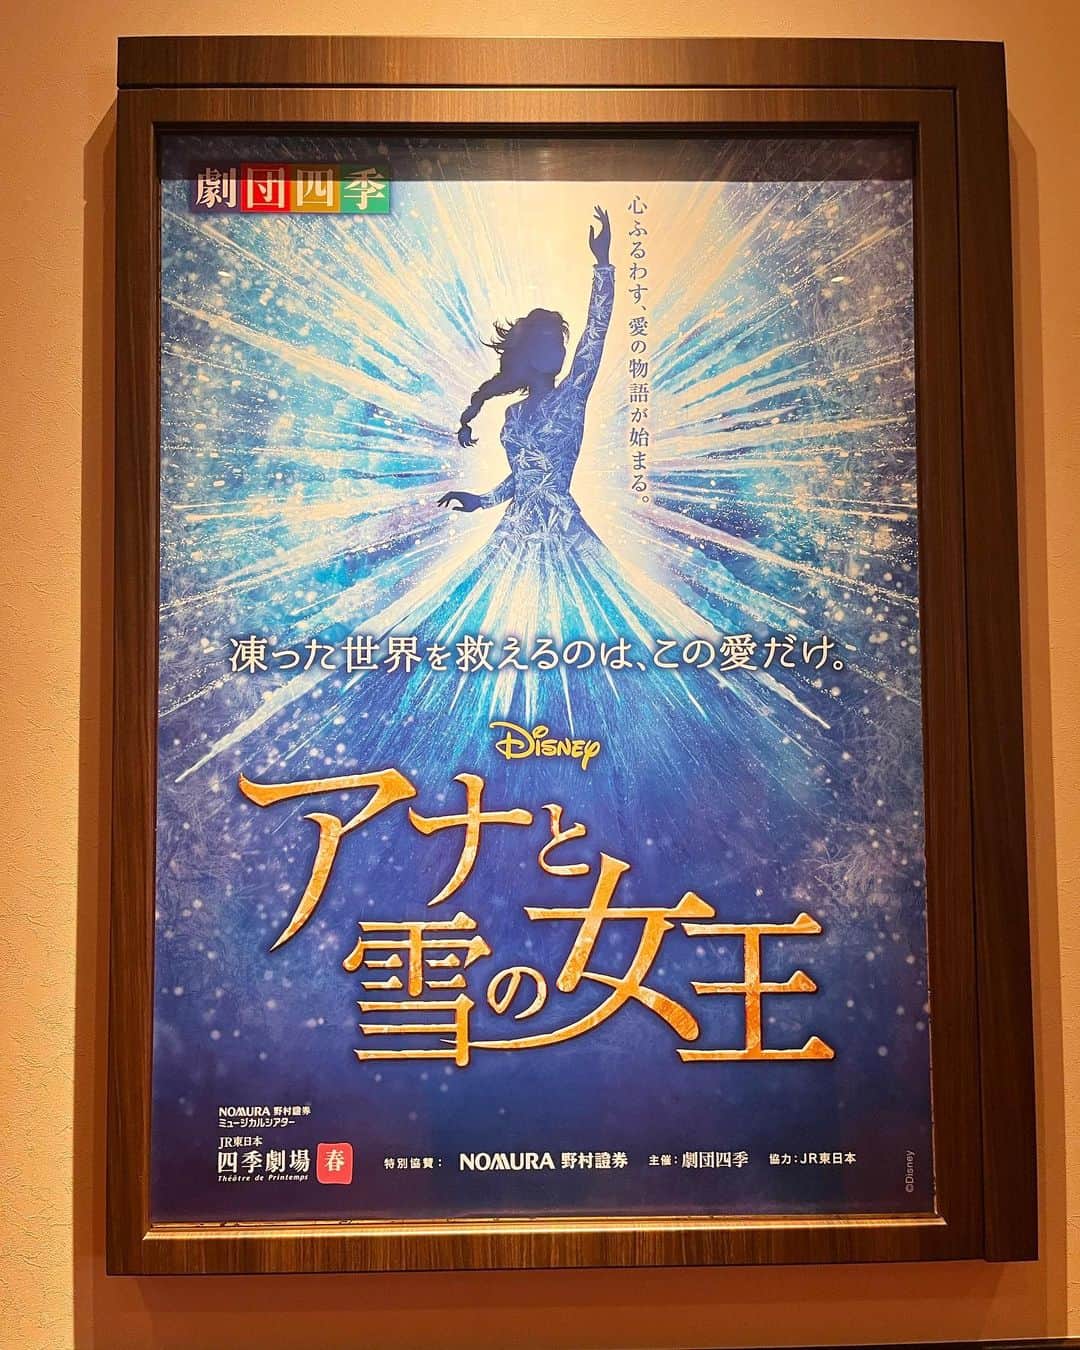 上田純樹のインスタグラム：「劇団四季『アナと雪の女王』を東京に観に行きました。圧巻。涙が止まらなかった。  夢をありがとうございました。  『リトルマーメイド』 『アナと雪の女王』と来たので次は『アラジン』『ライオンキング』辺りを狙います。  #劇団四季 #アナと雪の女王  #アナ雪 #アナ #三平果歩 さん #エルサ #岡本瑞恵 さん #泣きじゃくり #スヴェン #赤井涼之助 さん #完全なトナカイ」